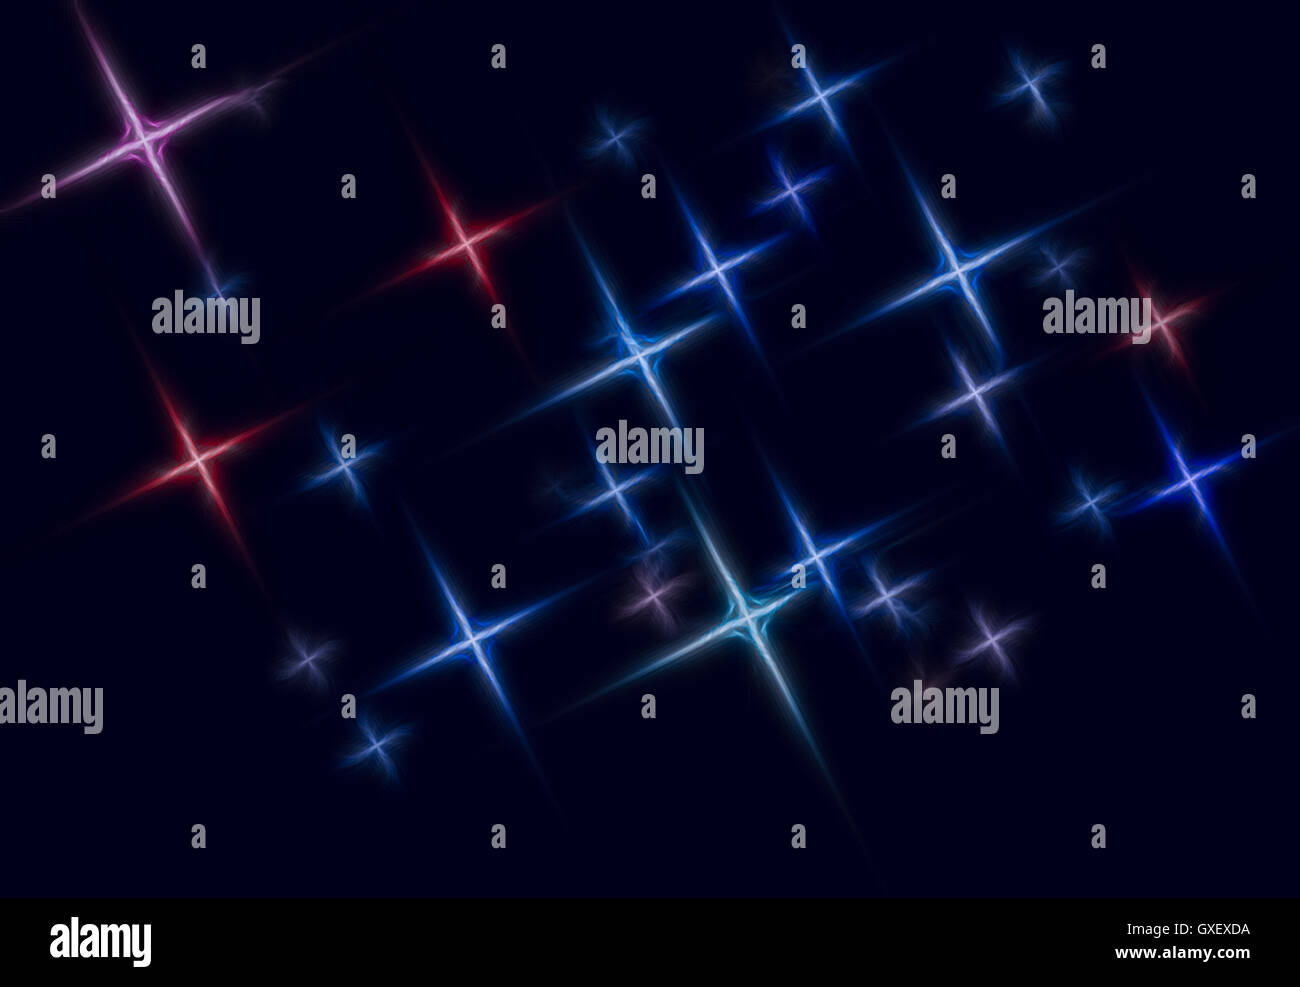 Spazio astratto sfondo stellato illustrazione composta di stelle stilizzati che formano un disegno su sfondo scuro. Foto Stock